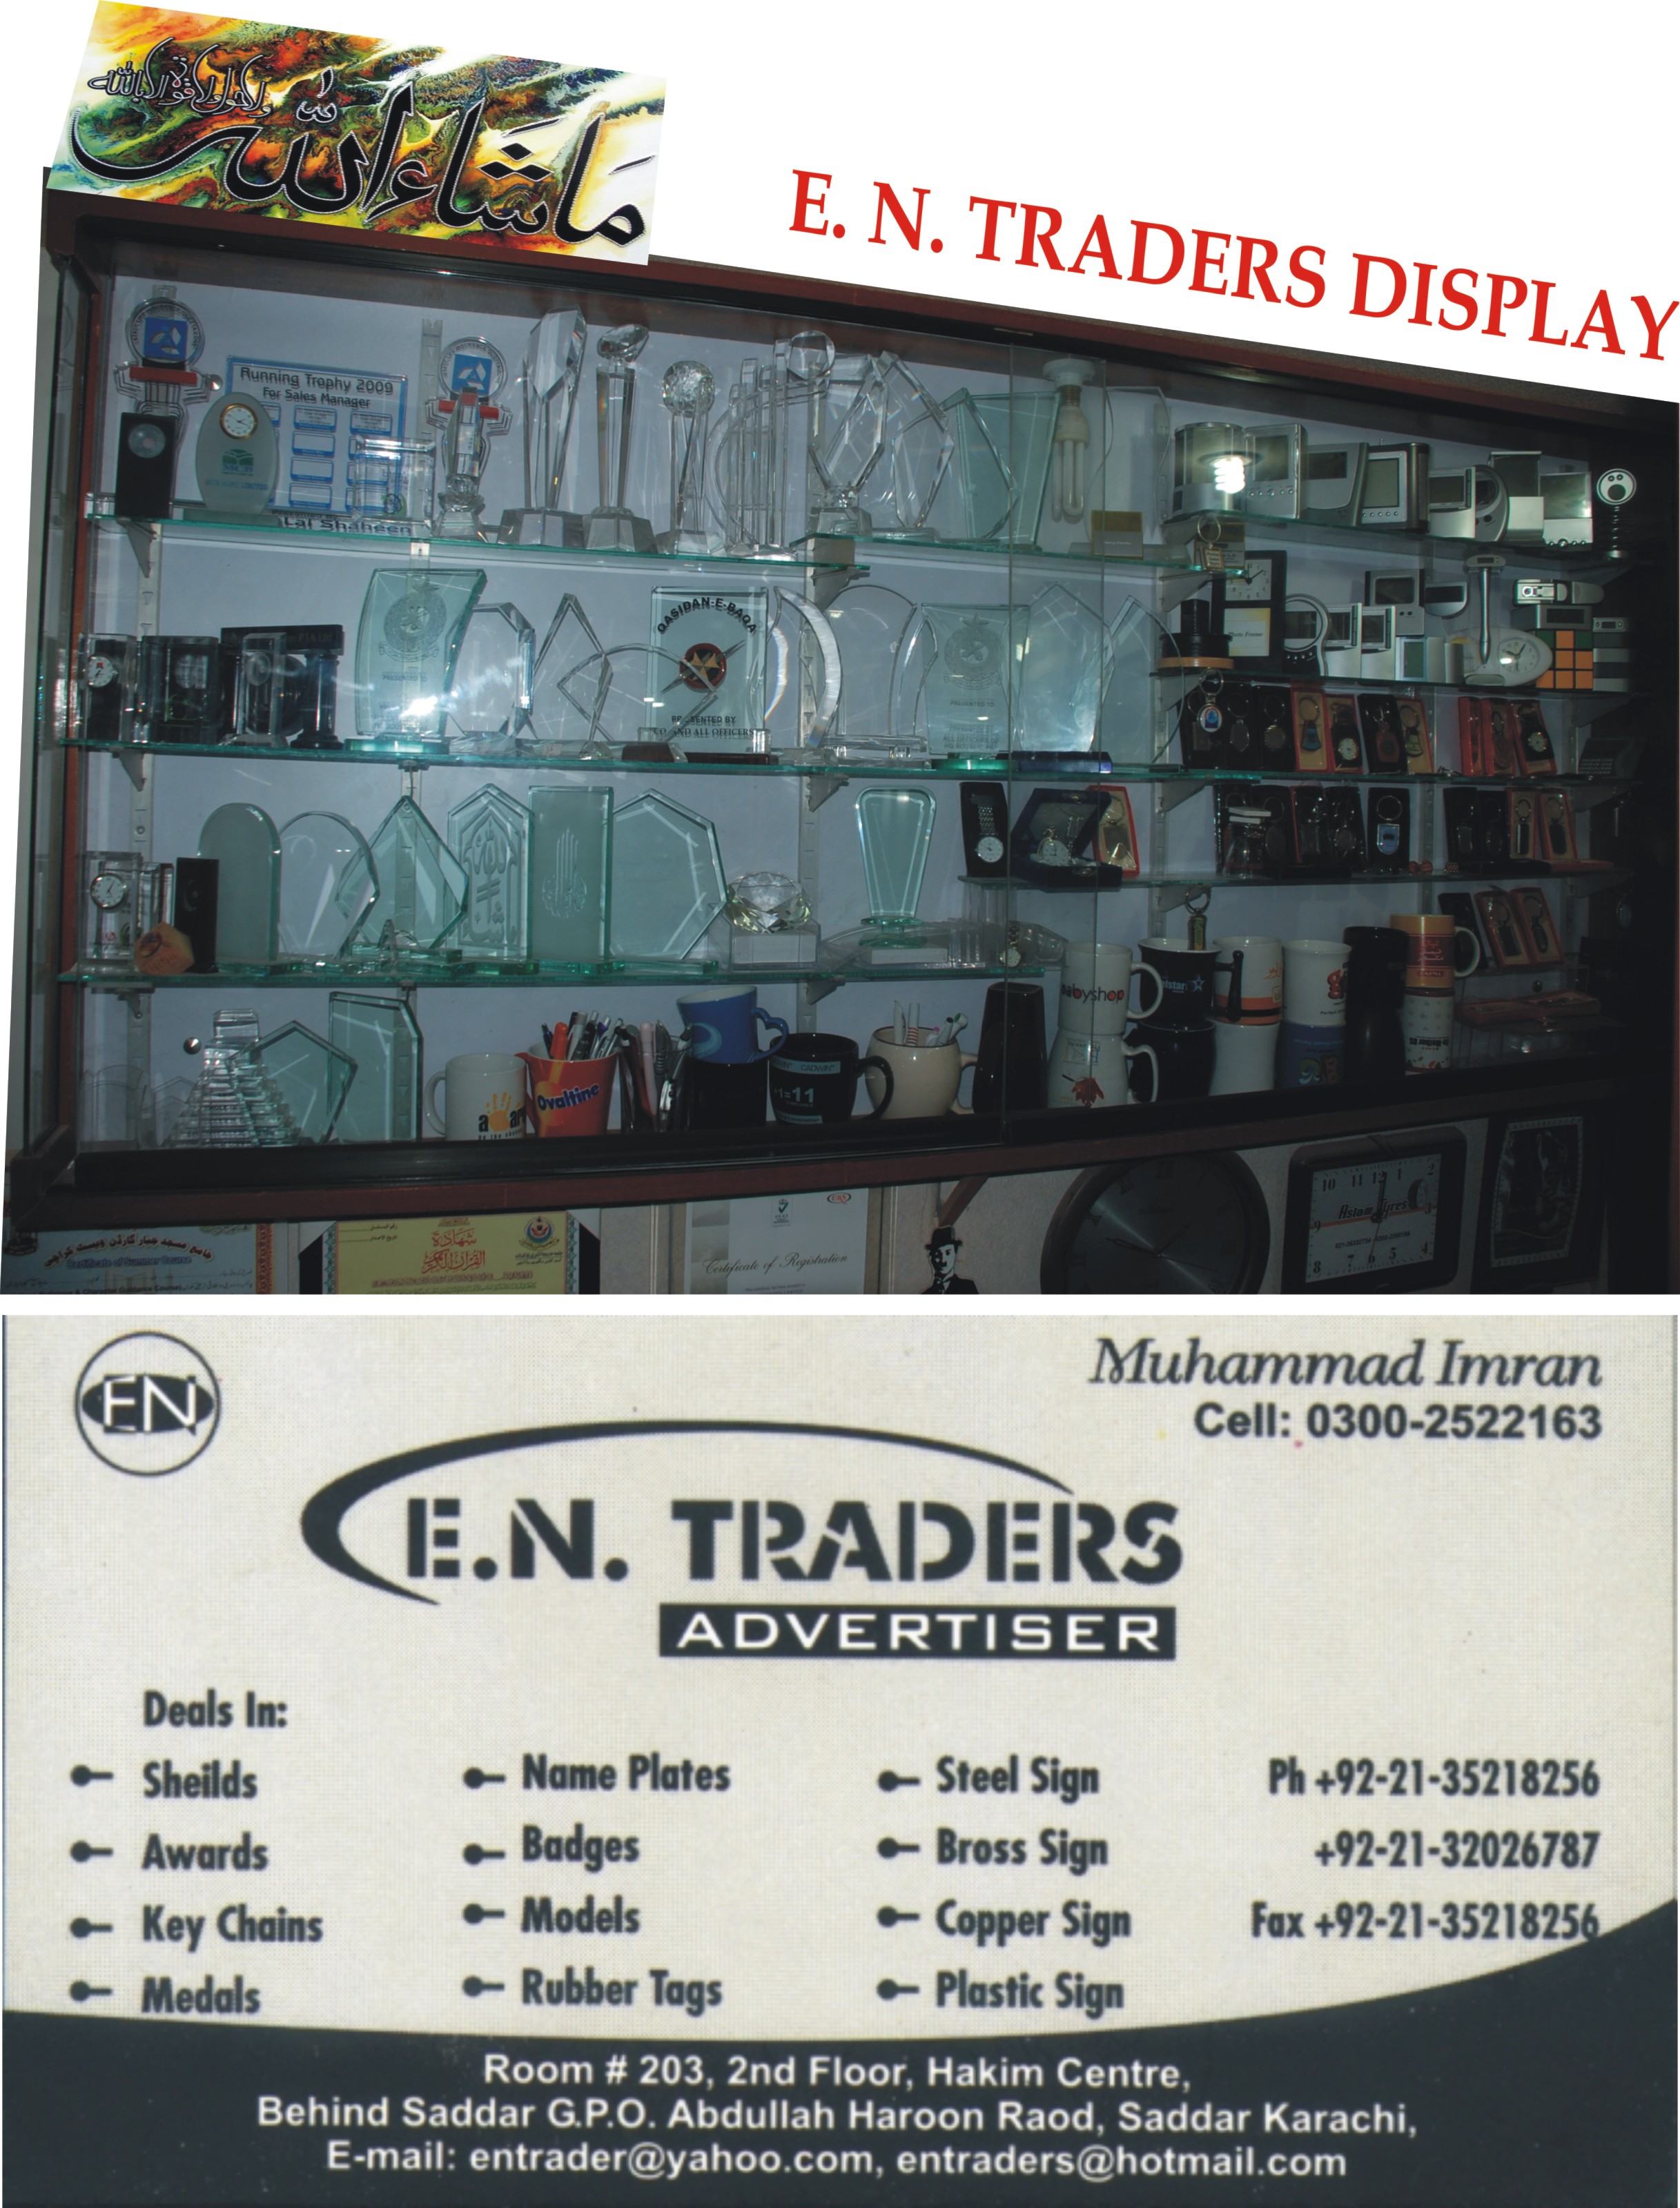 E. N. Traders (Advertiser)